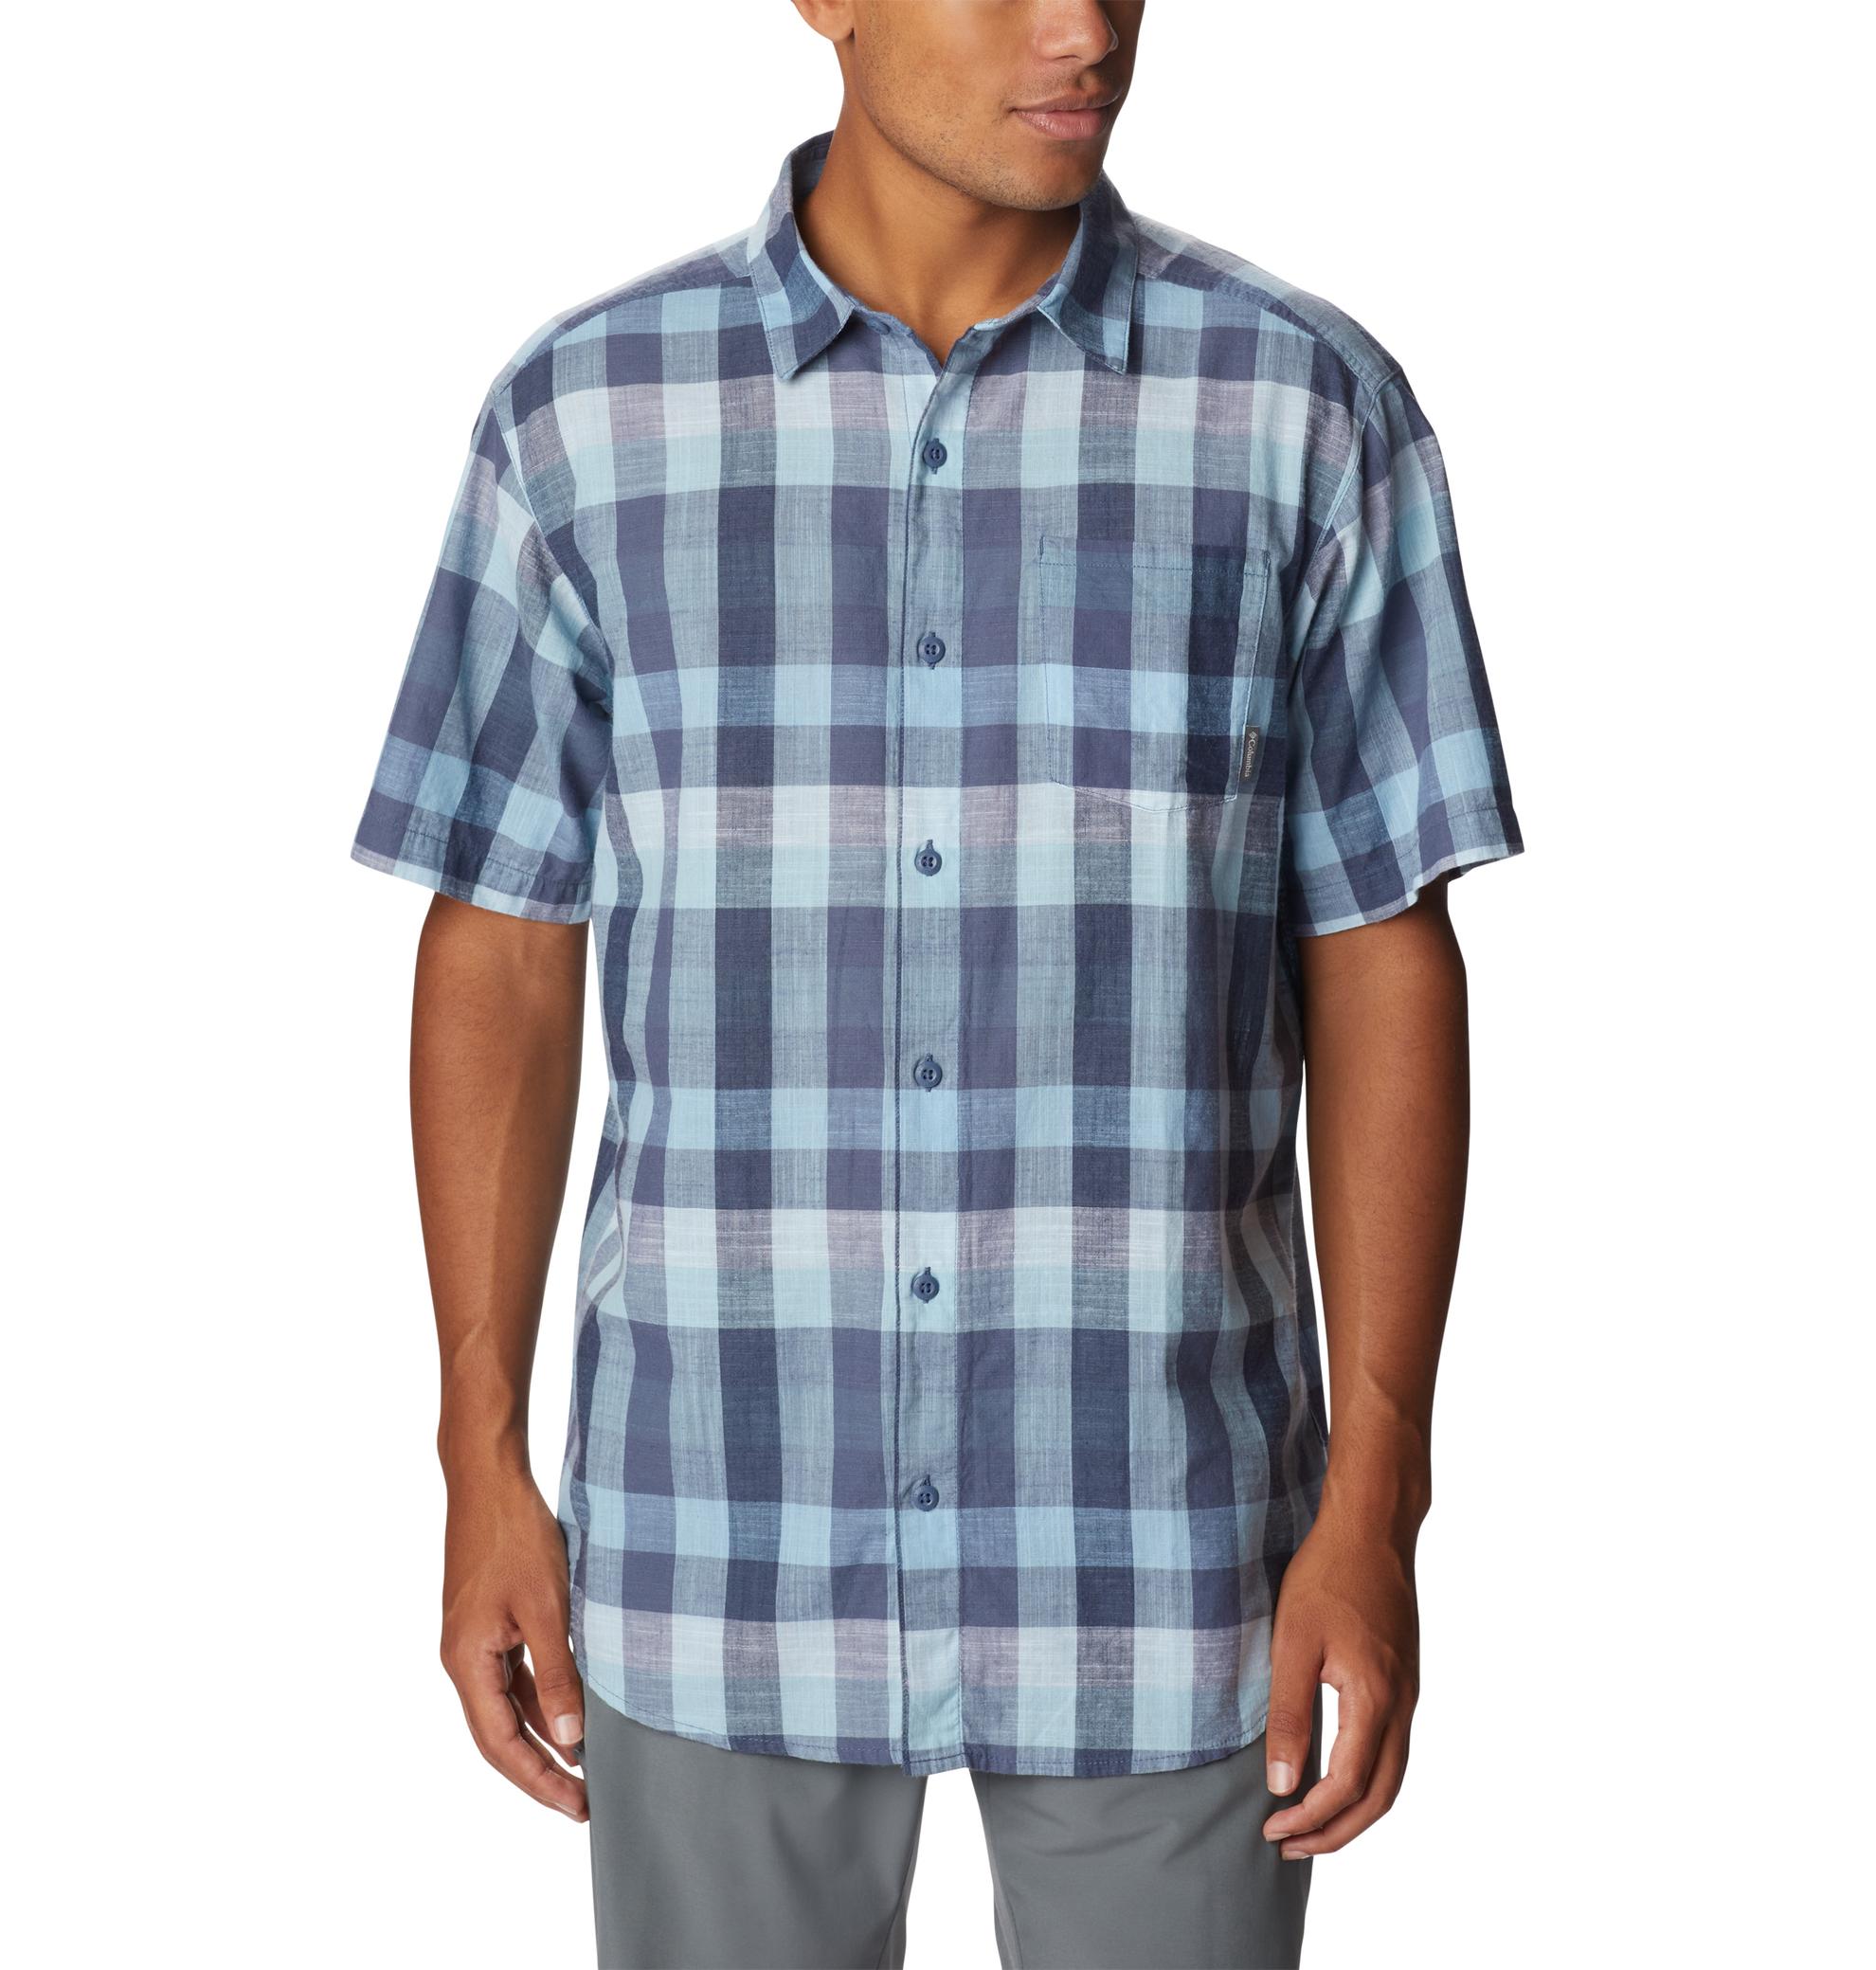 Oferta de Camisas Lifestyle Under Exposure Yd Ss Para Hombre por $167930 en Columbia